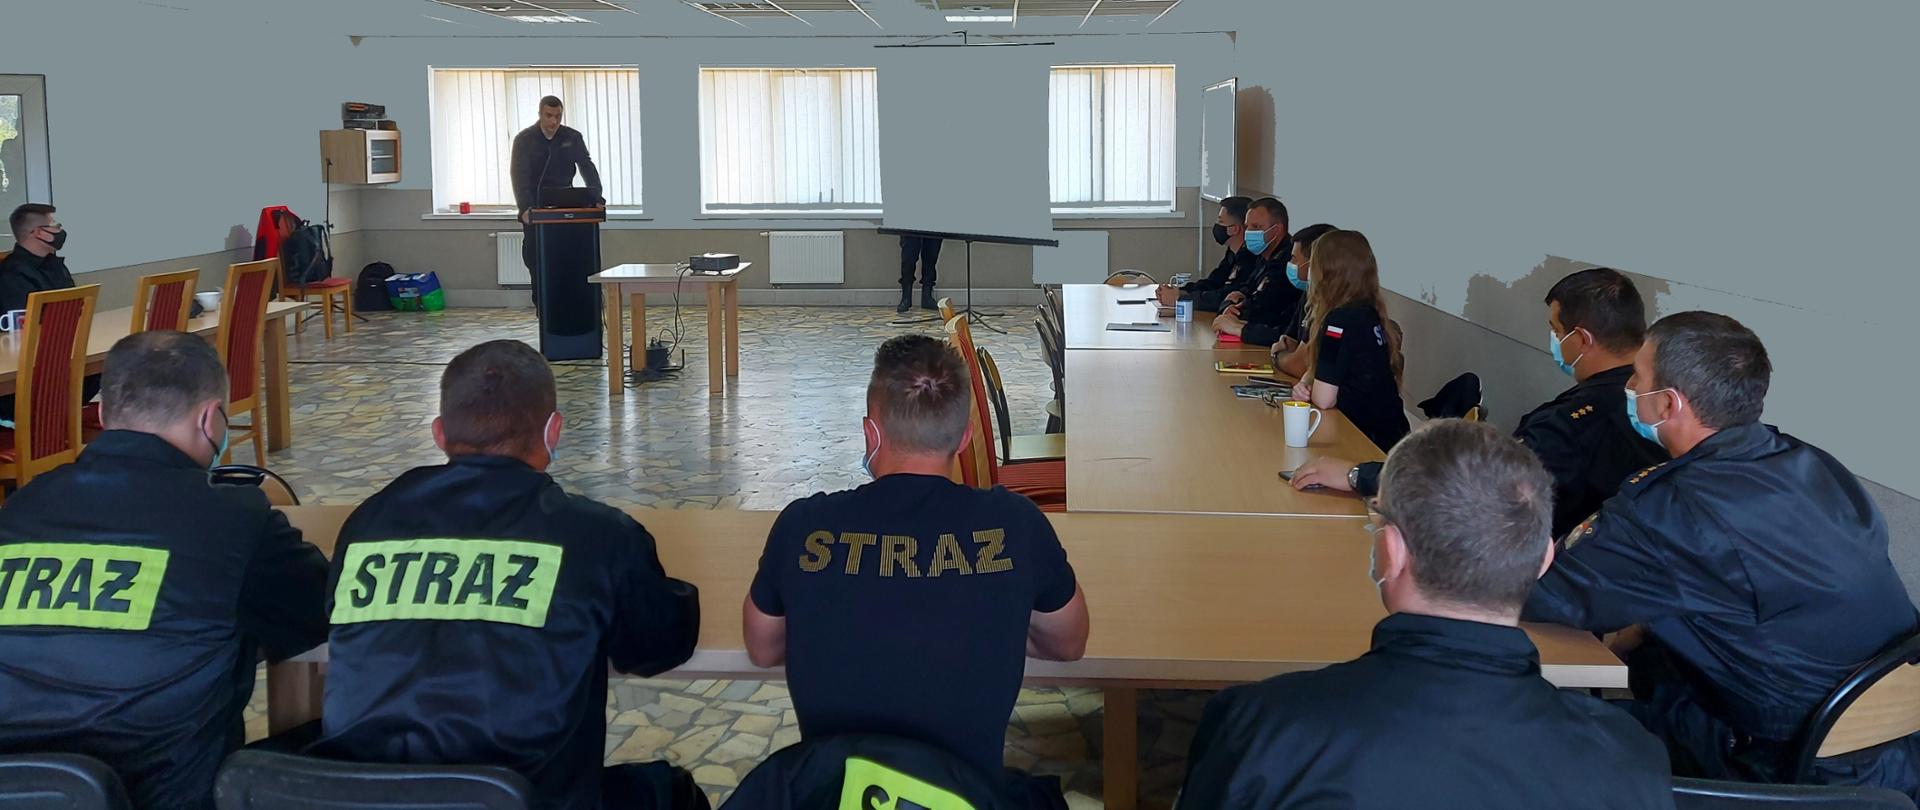 Na zdjęciu wiać siedzących uczestników szkolenia, na drugim planie w oddaleniu za mównicą stoi prowadzący zajęcia. 